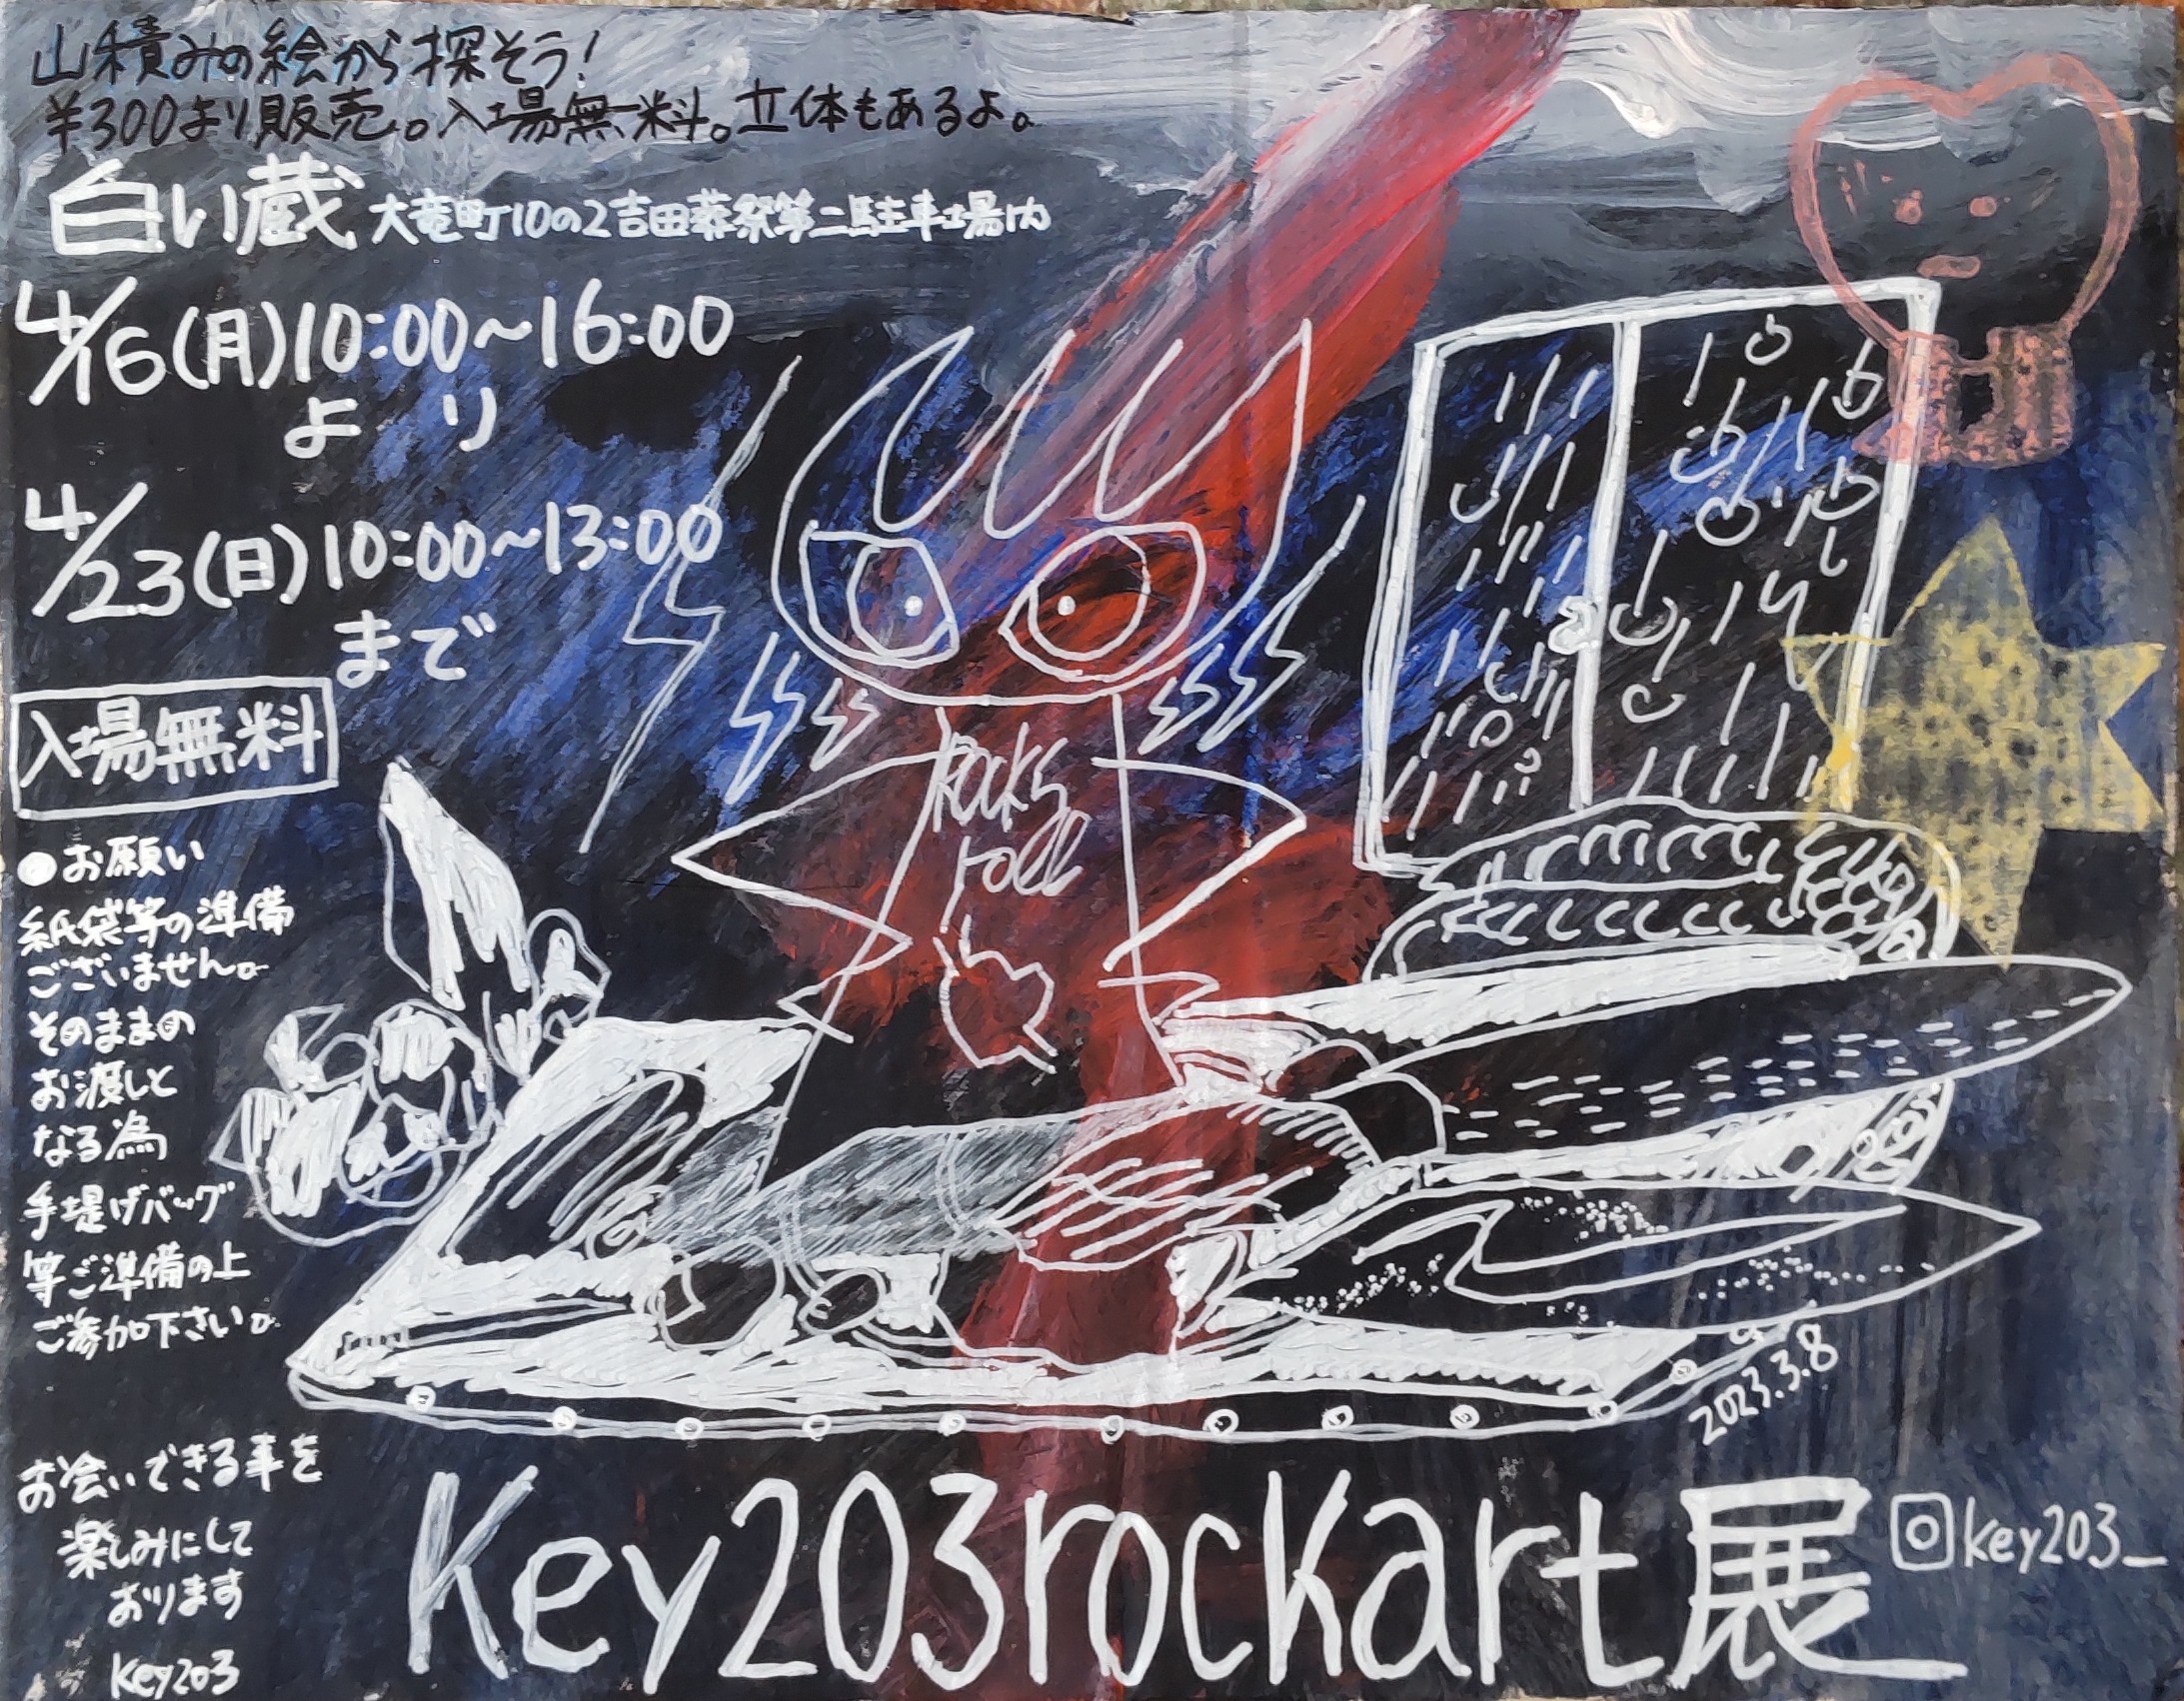 key203rockart展